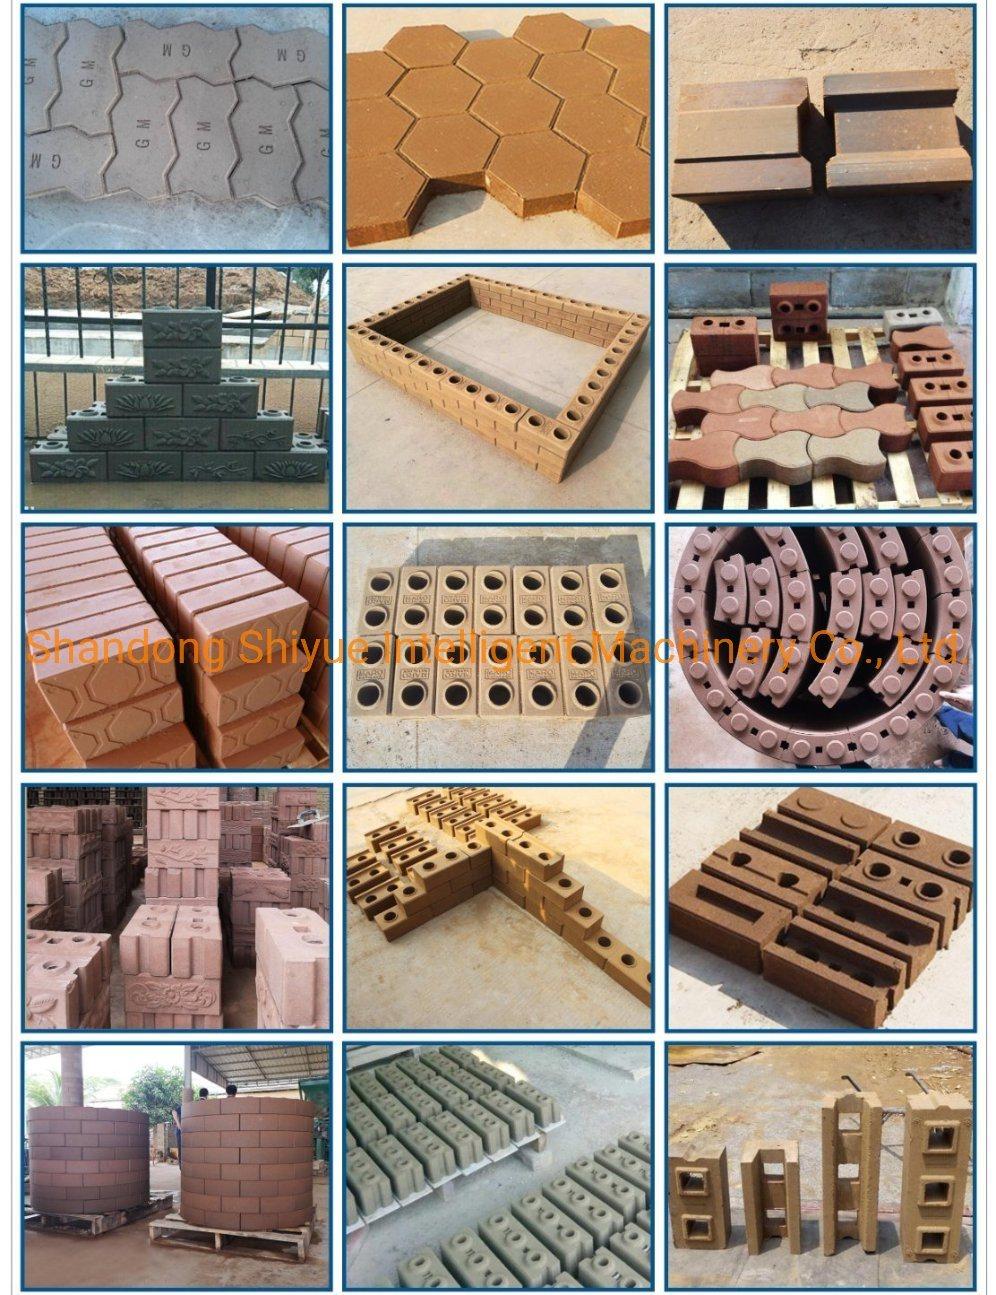 Lego Brick Making Machine Interlocking Clay Brick Making Machine From China